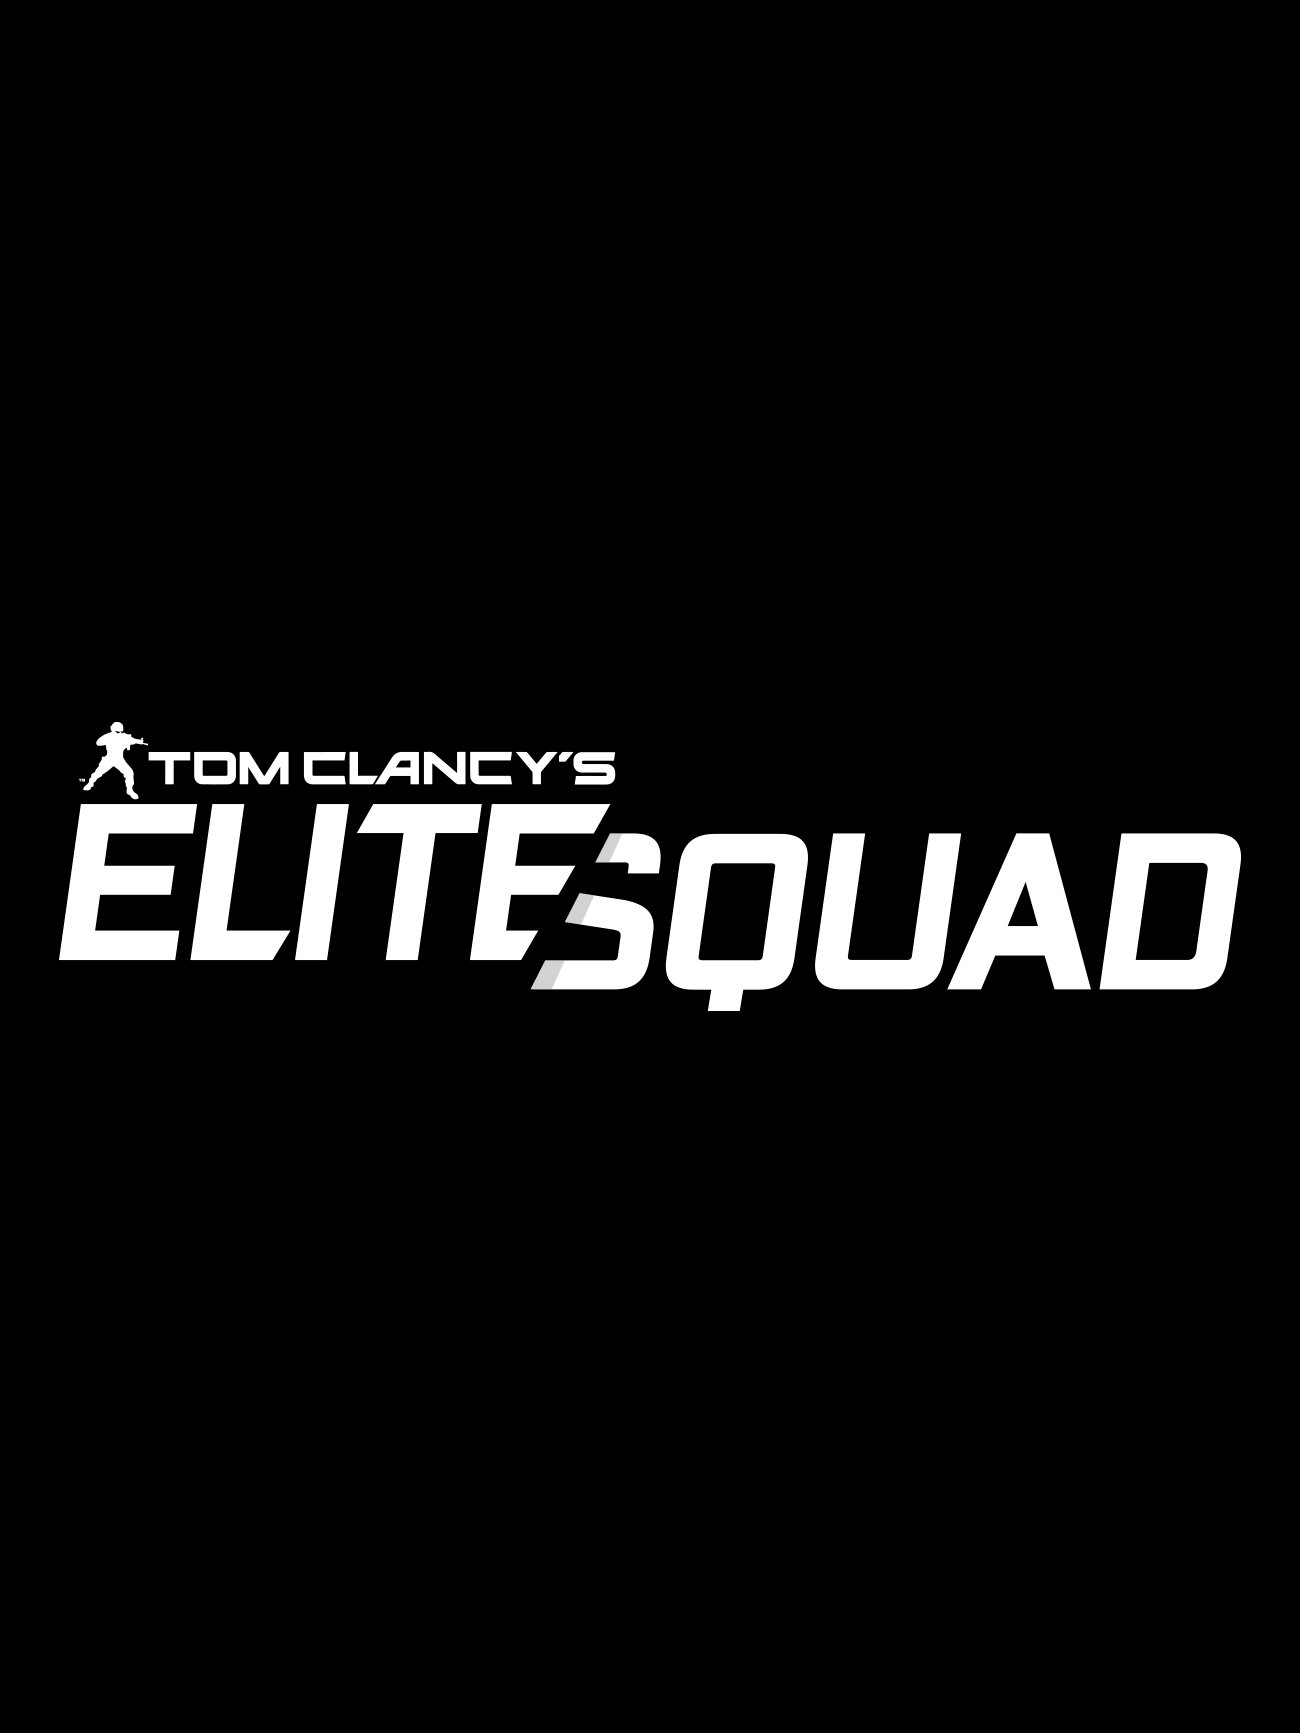 Image of Tom Clancy's Elite Squad